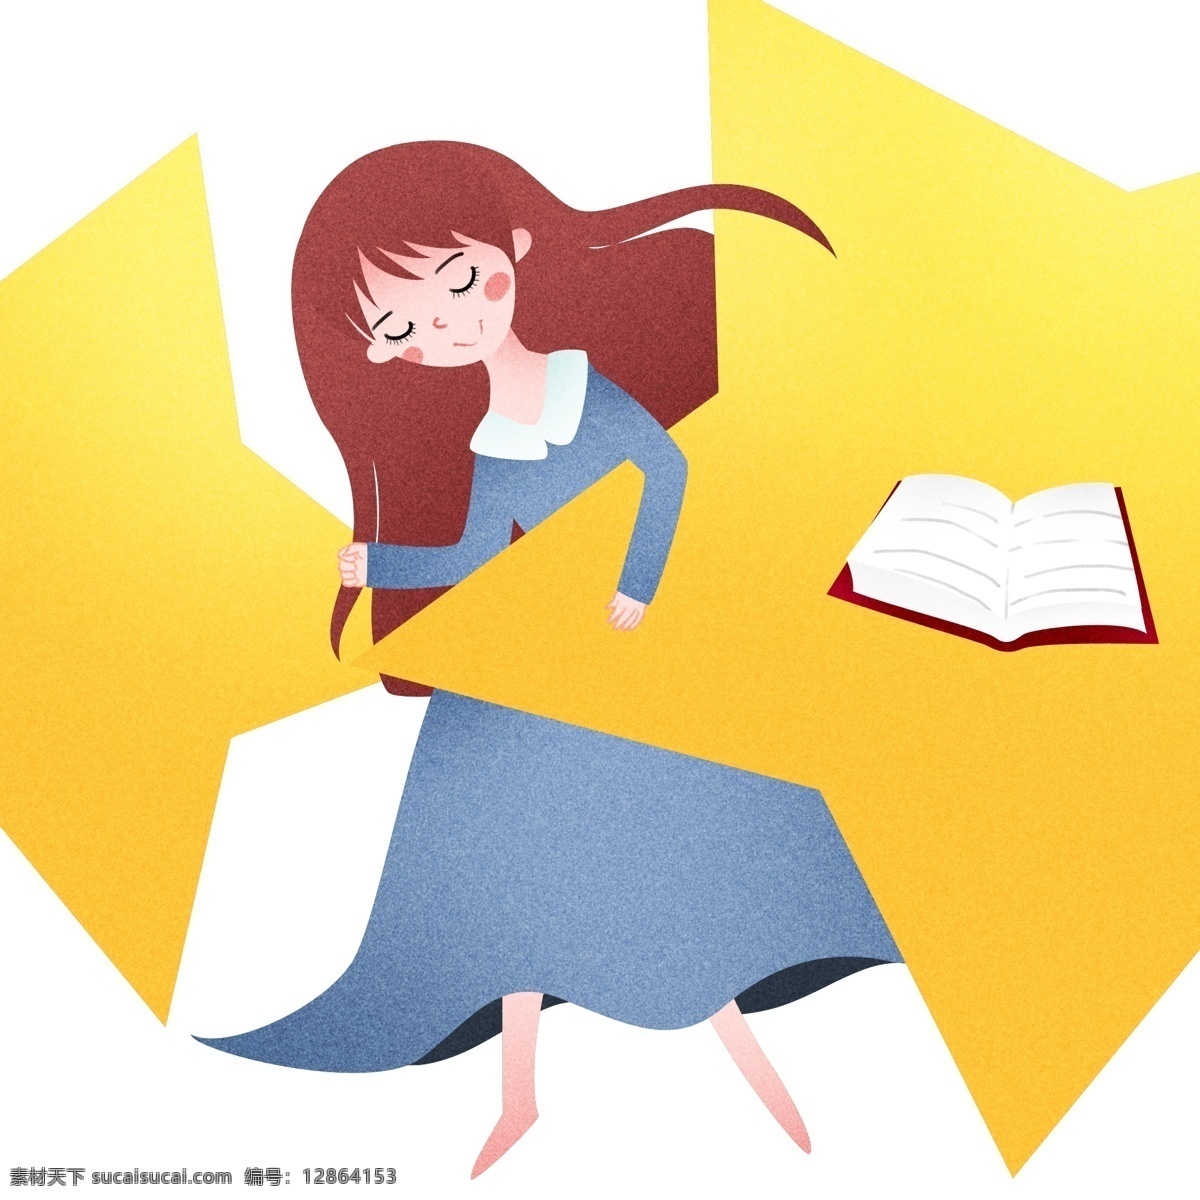 躺 睡觉 女孩 插画 世界 睡眠 日 躺着睡觉 睡觉的小女孩 红色的图书 黄色的被子 卡通人物